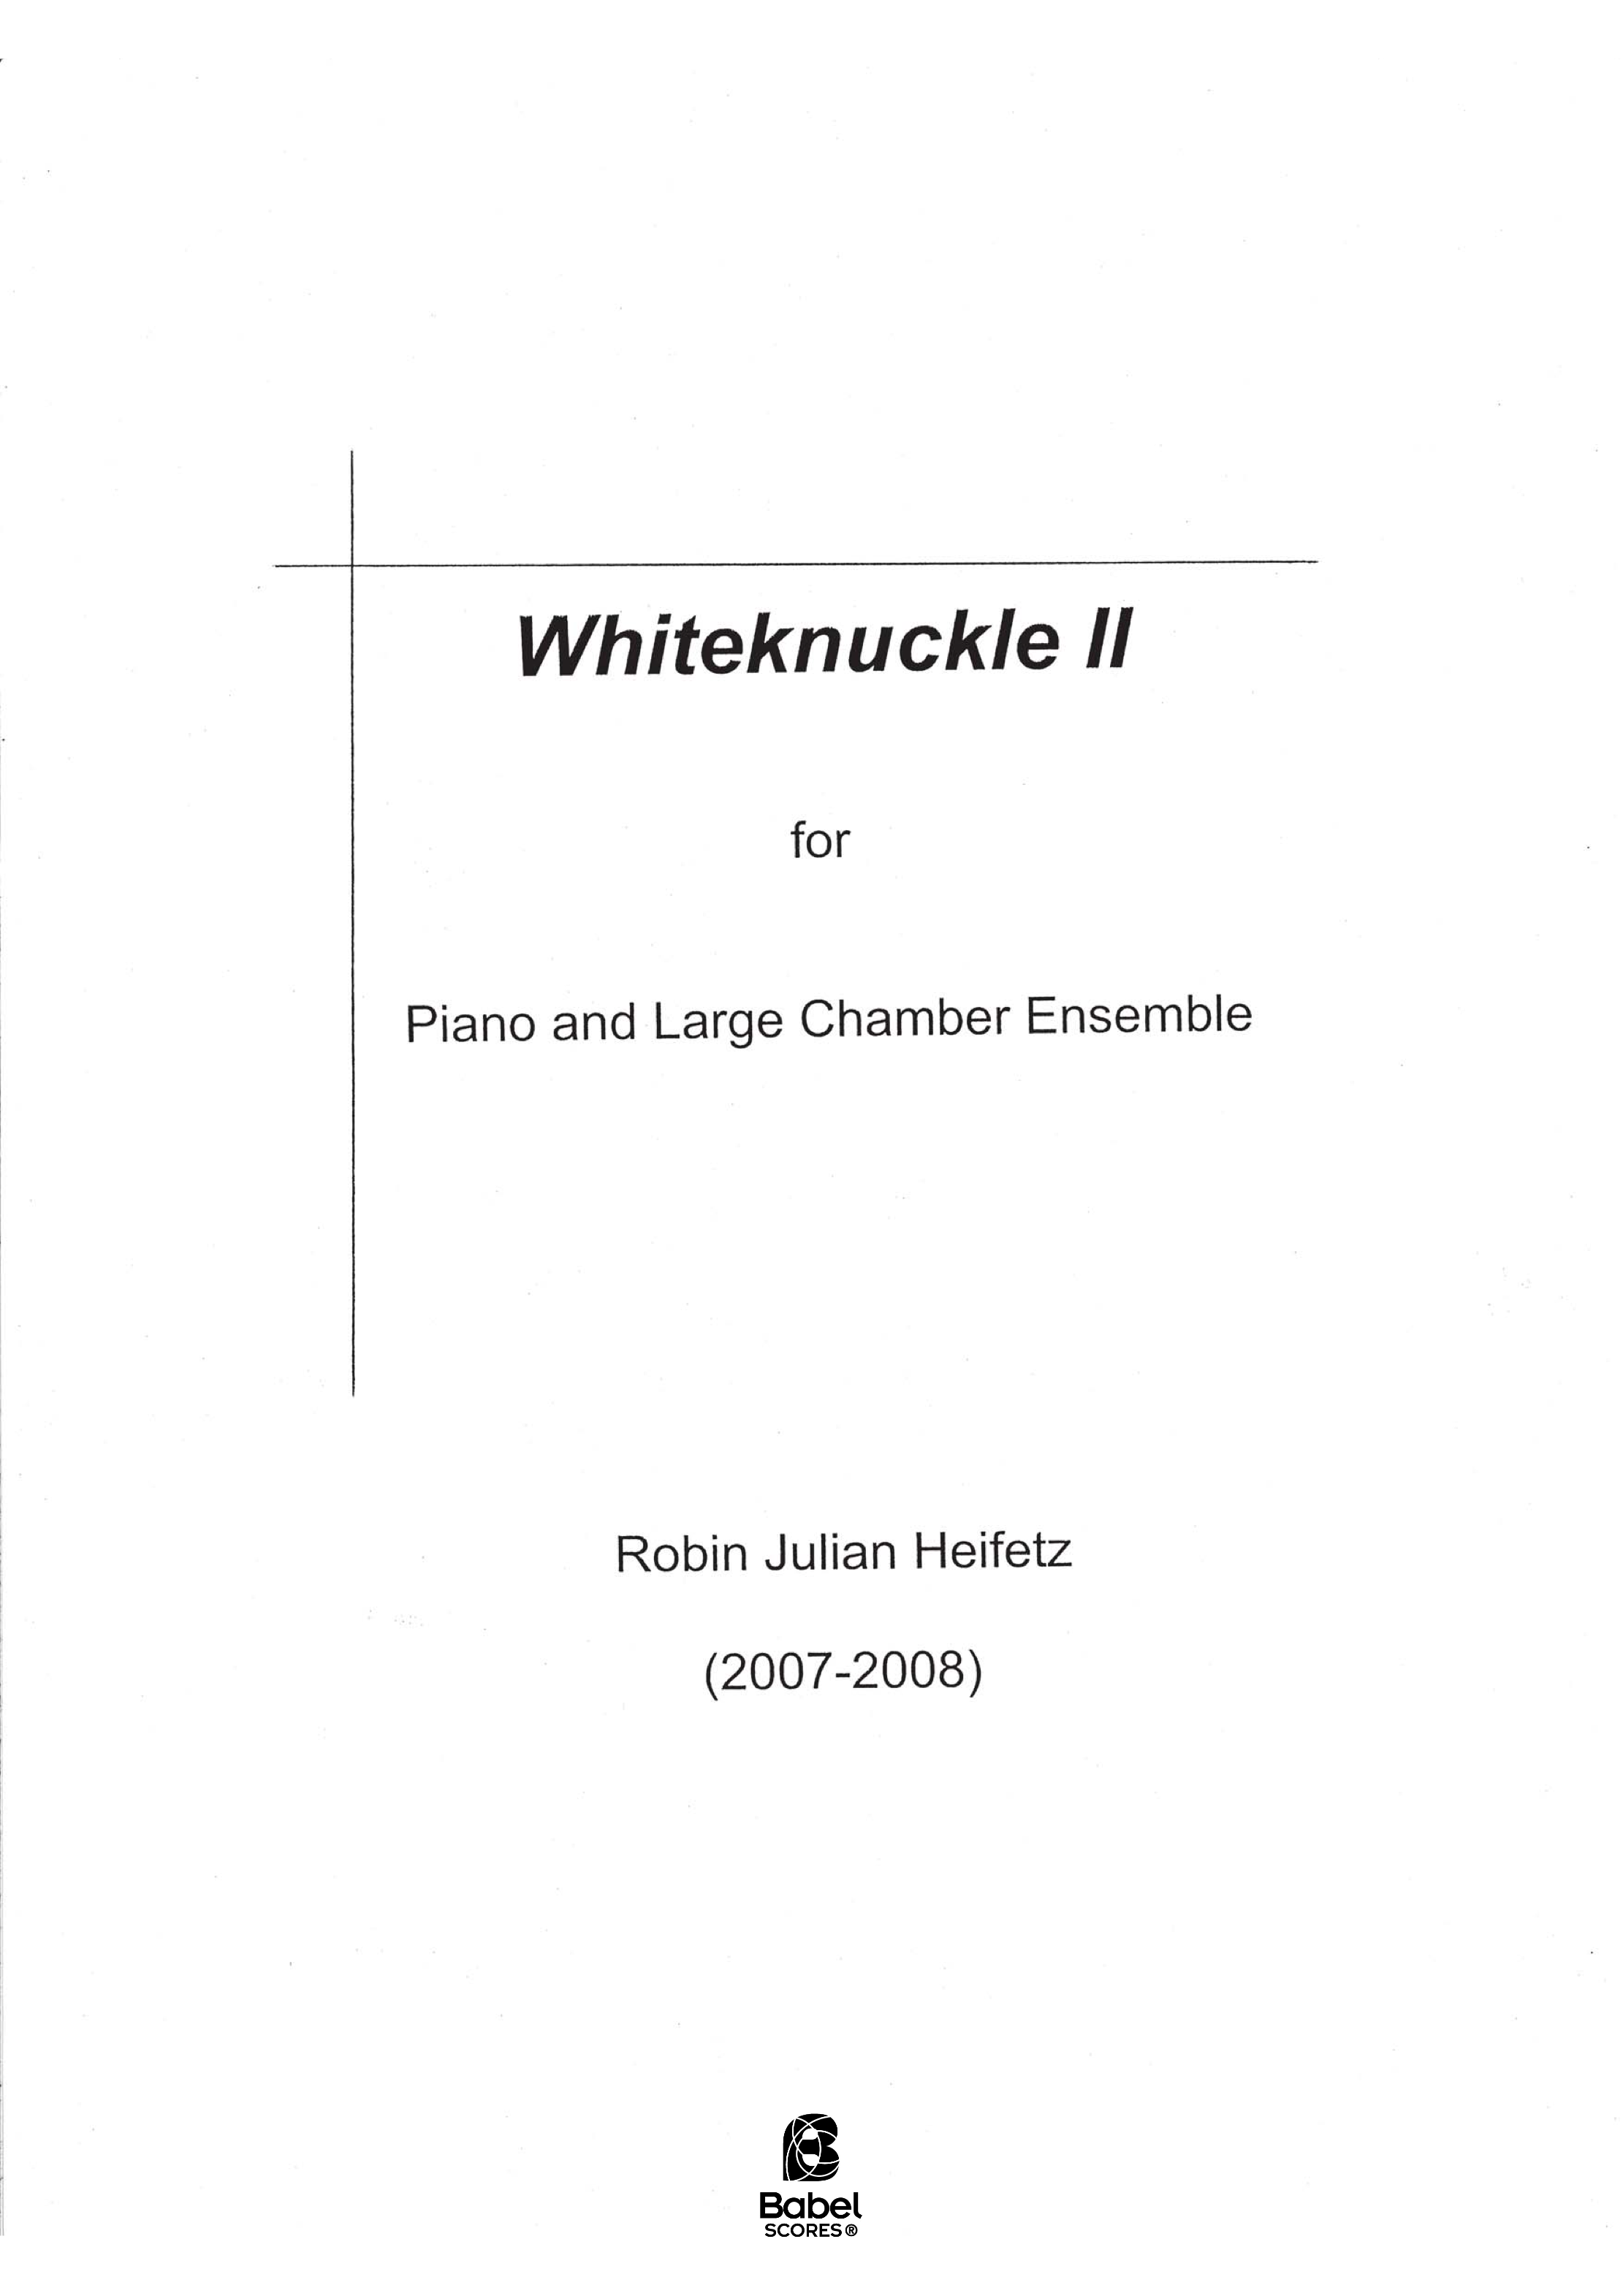 Whiteknuckle II A3 z 2 150 1 163